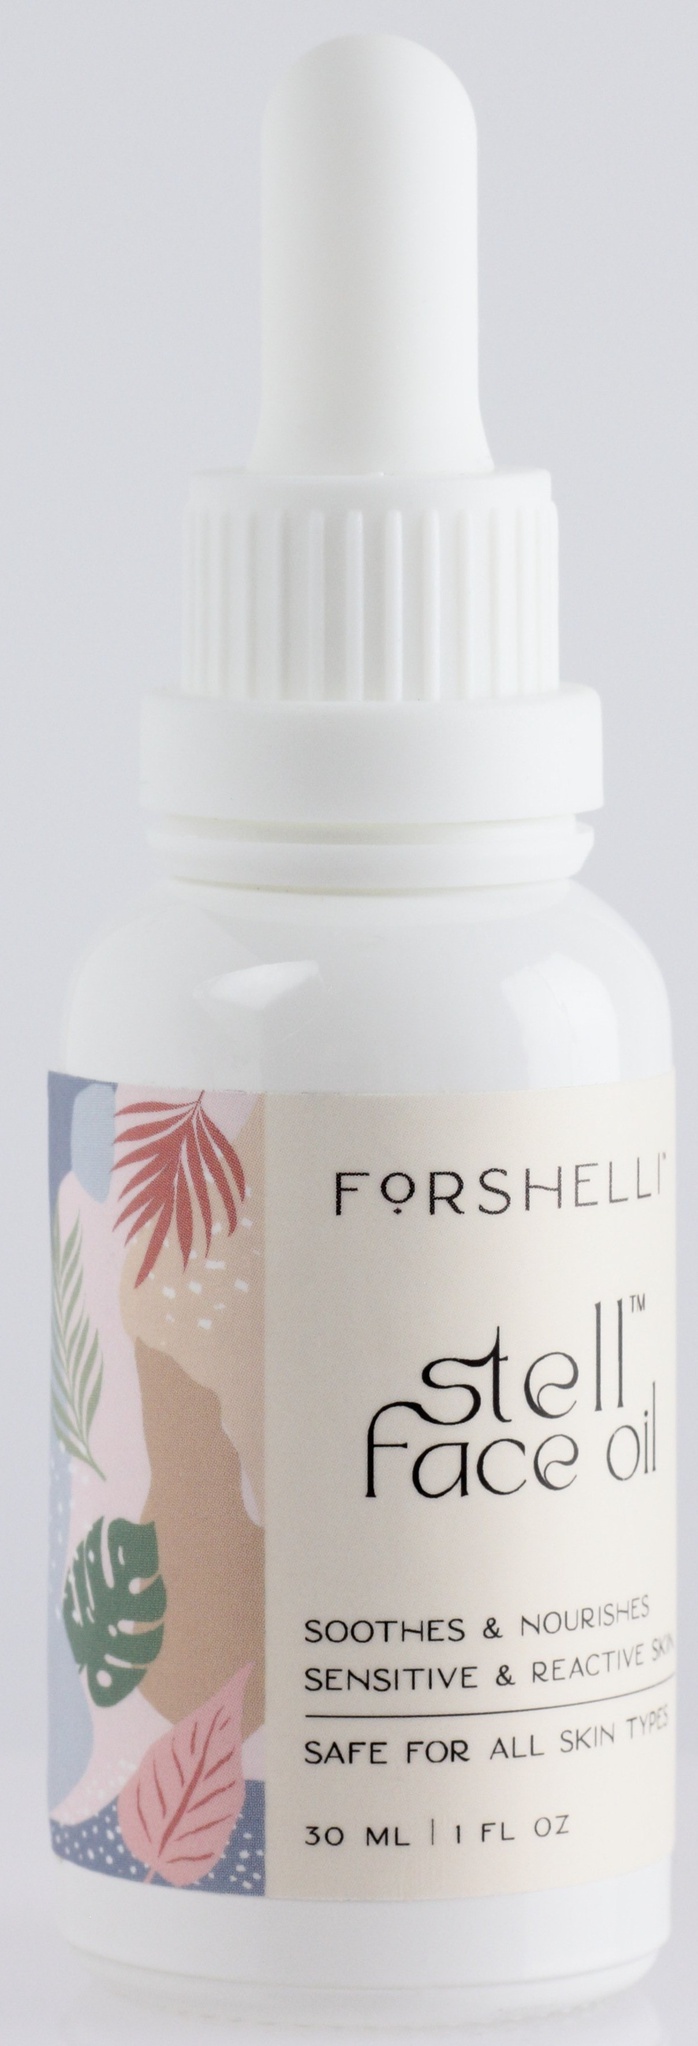 Forshelli™ Stell™ Face Oil